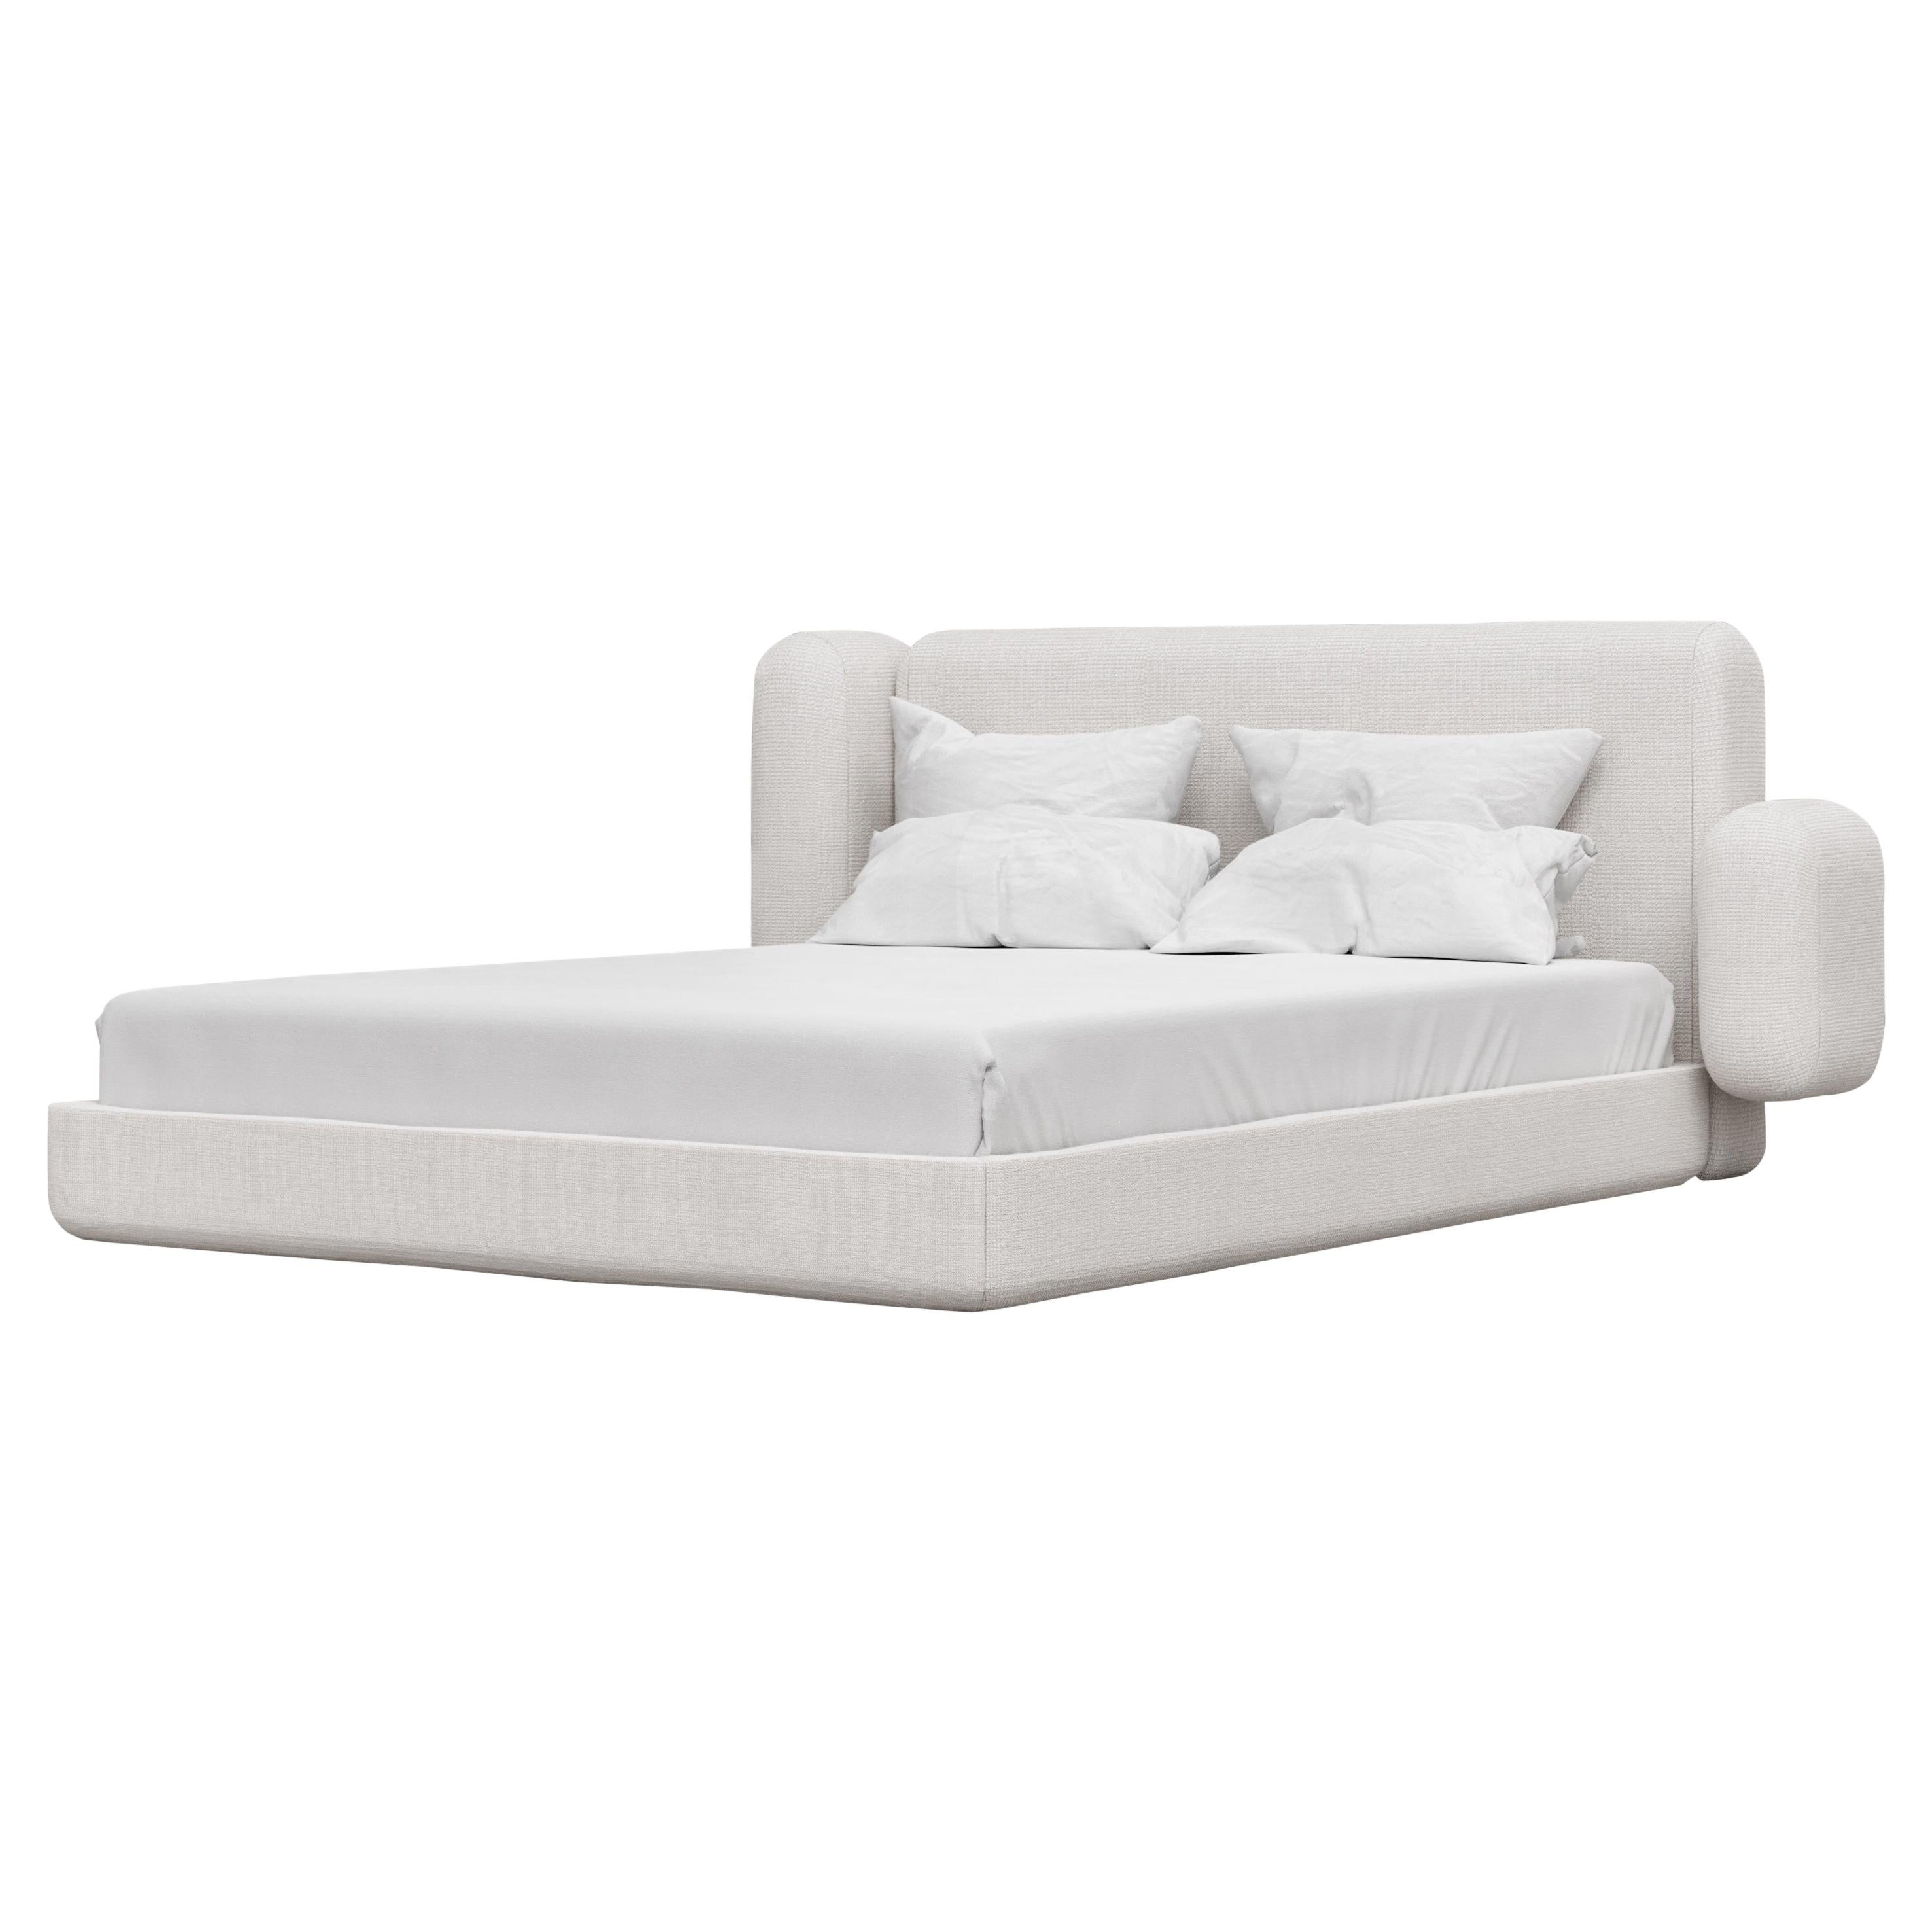 ASYM BED - Modernes asymmetrisches Bett aus geschwungenem Lammfell in weichem Weiß